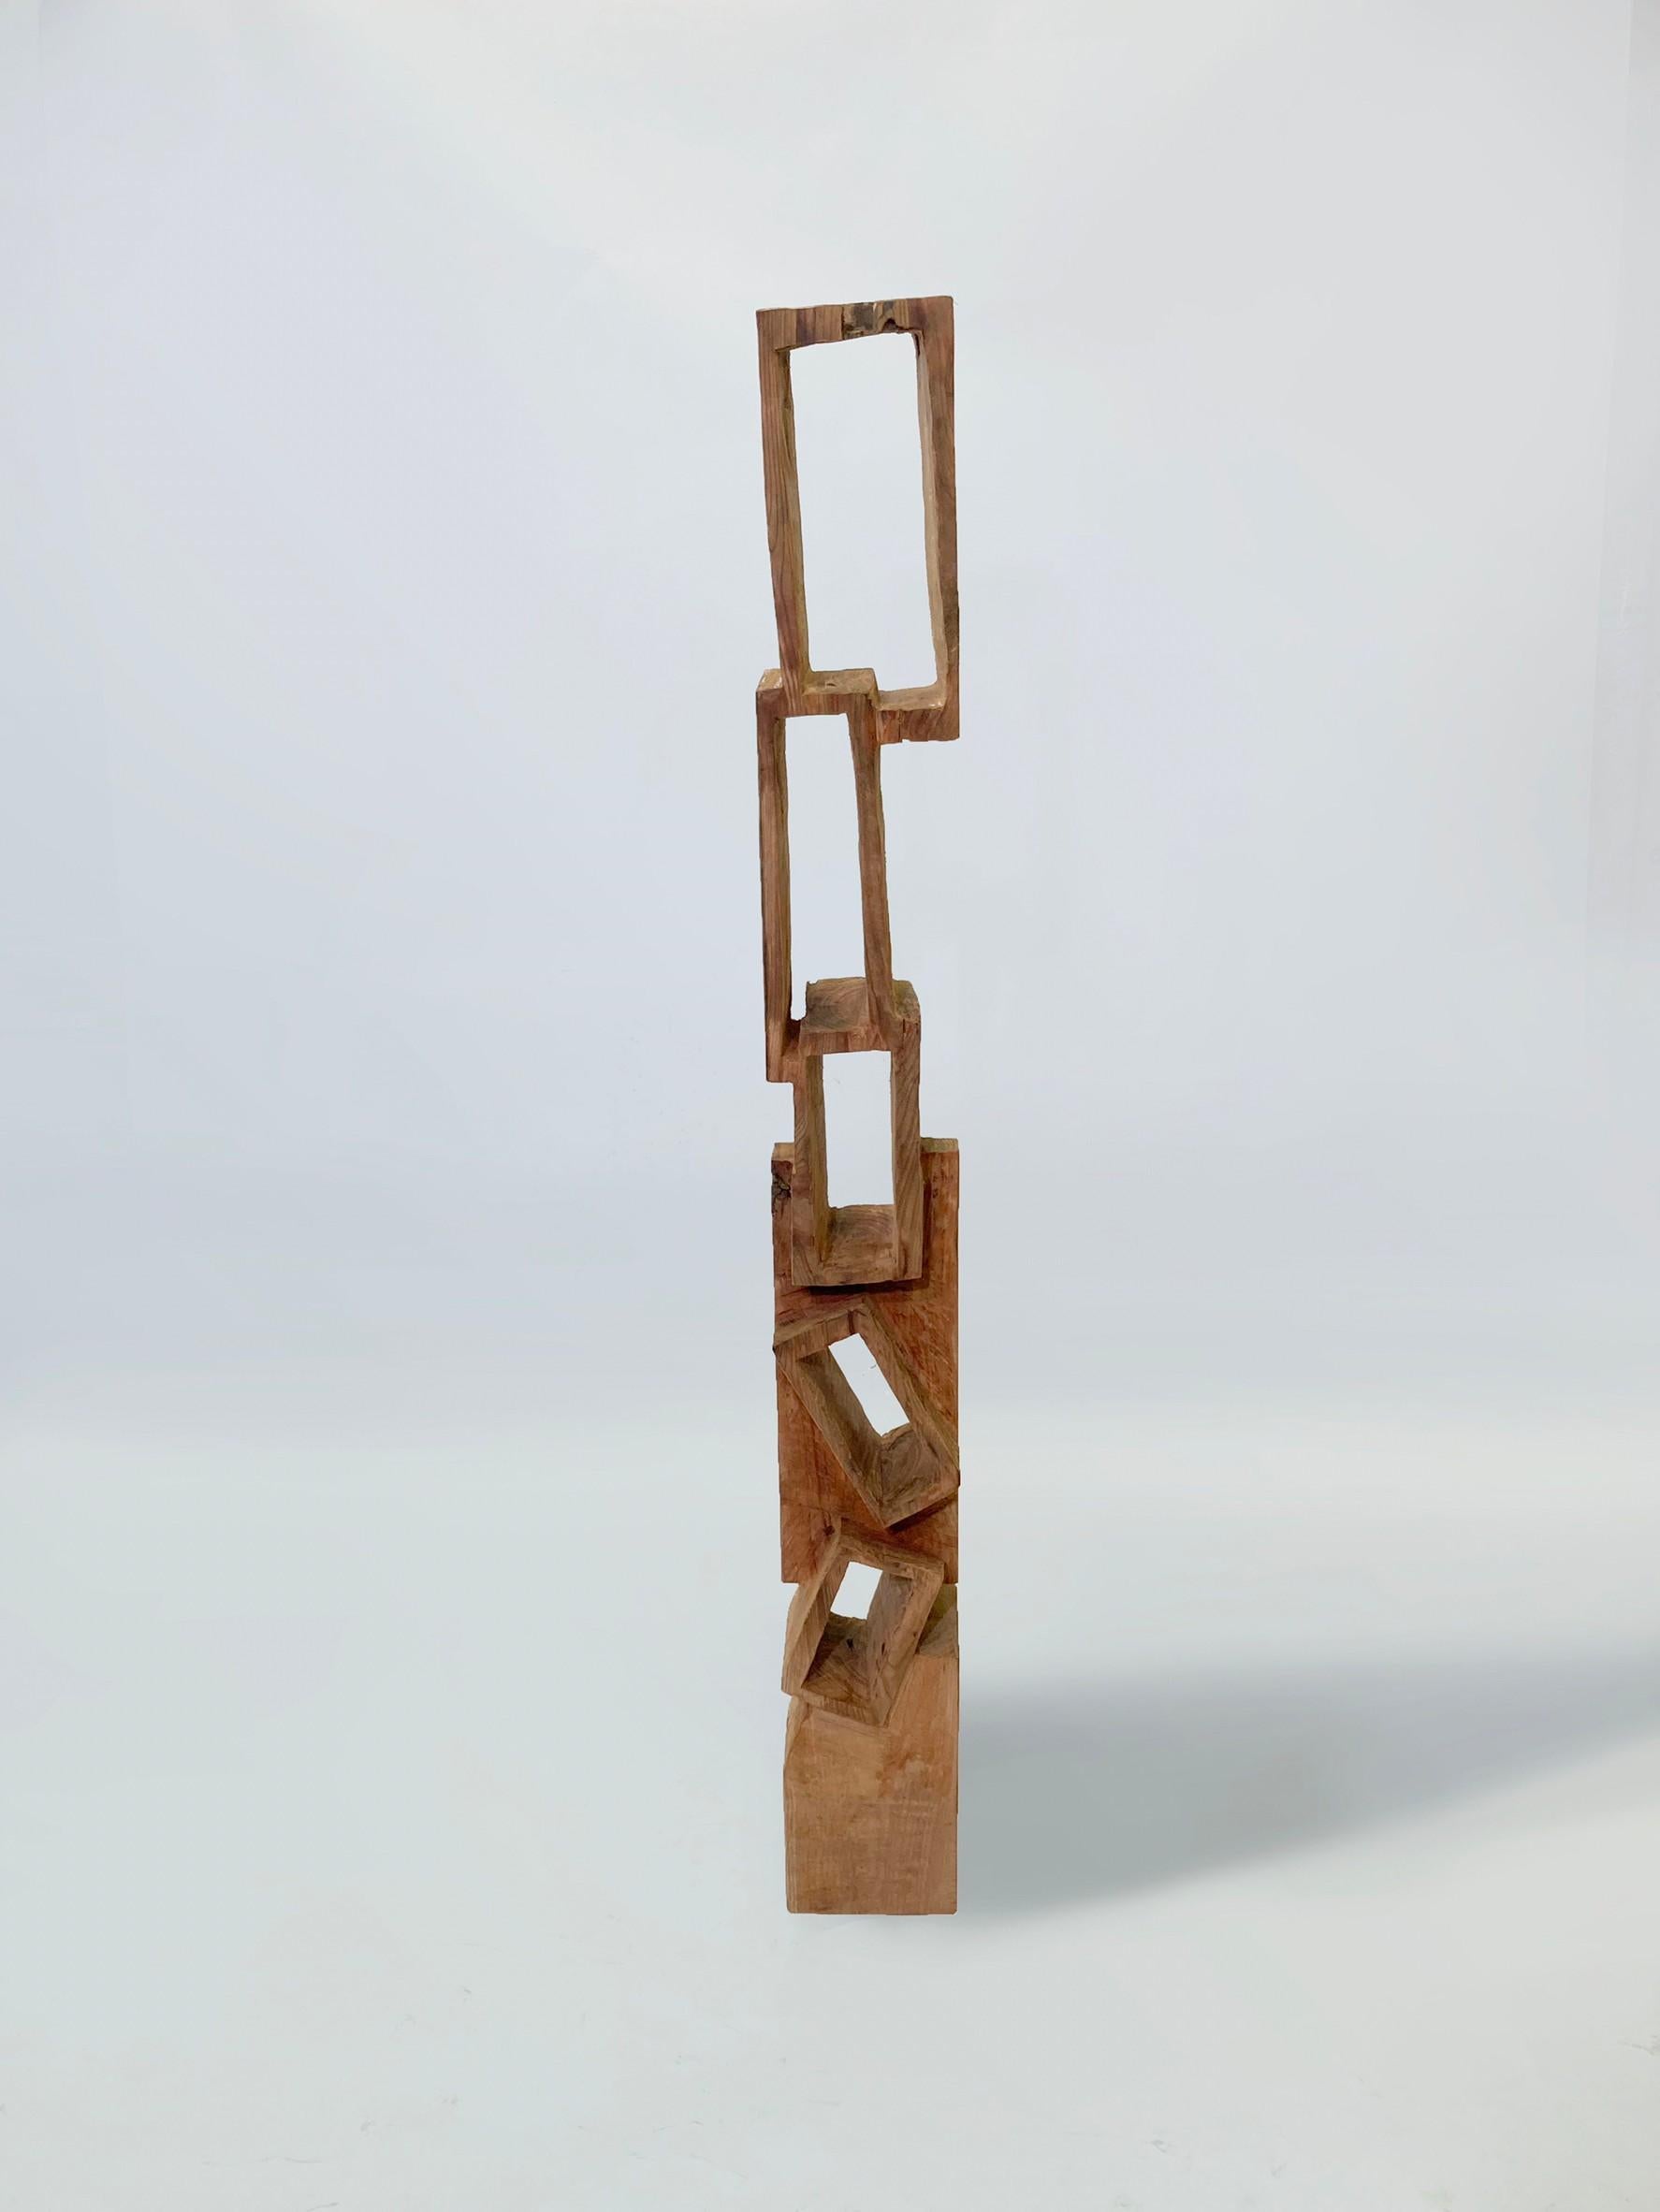 Tour Masouleh 02
Sculpture. Elle peut également être utilisée comme petite bibliothèque. 

Matériau : Zelkova
Cette œuvre est taillée dans le bois avec des sortes de tronçonneuses.
La plupart des bois utilisés pour ses œuvres ne peuvent servir